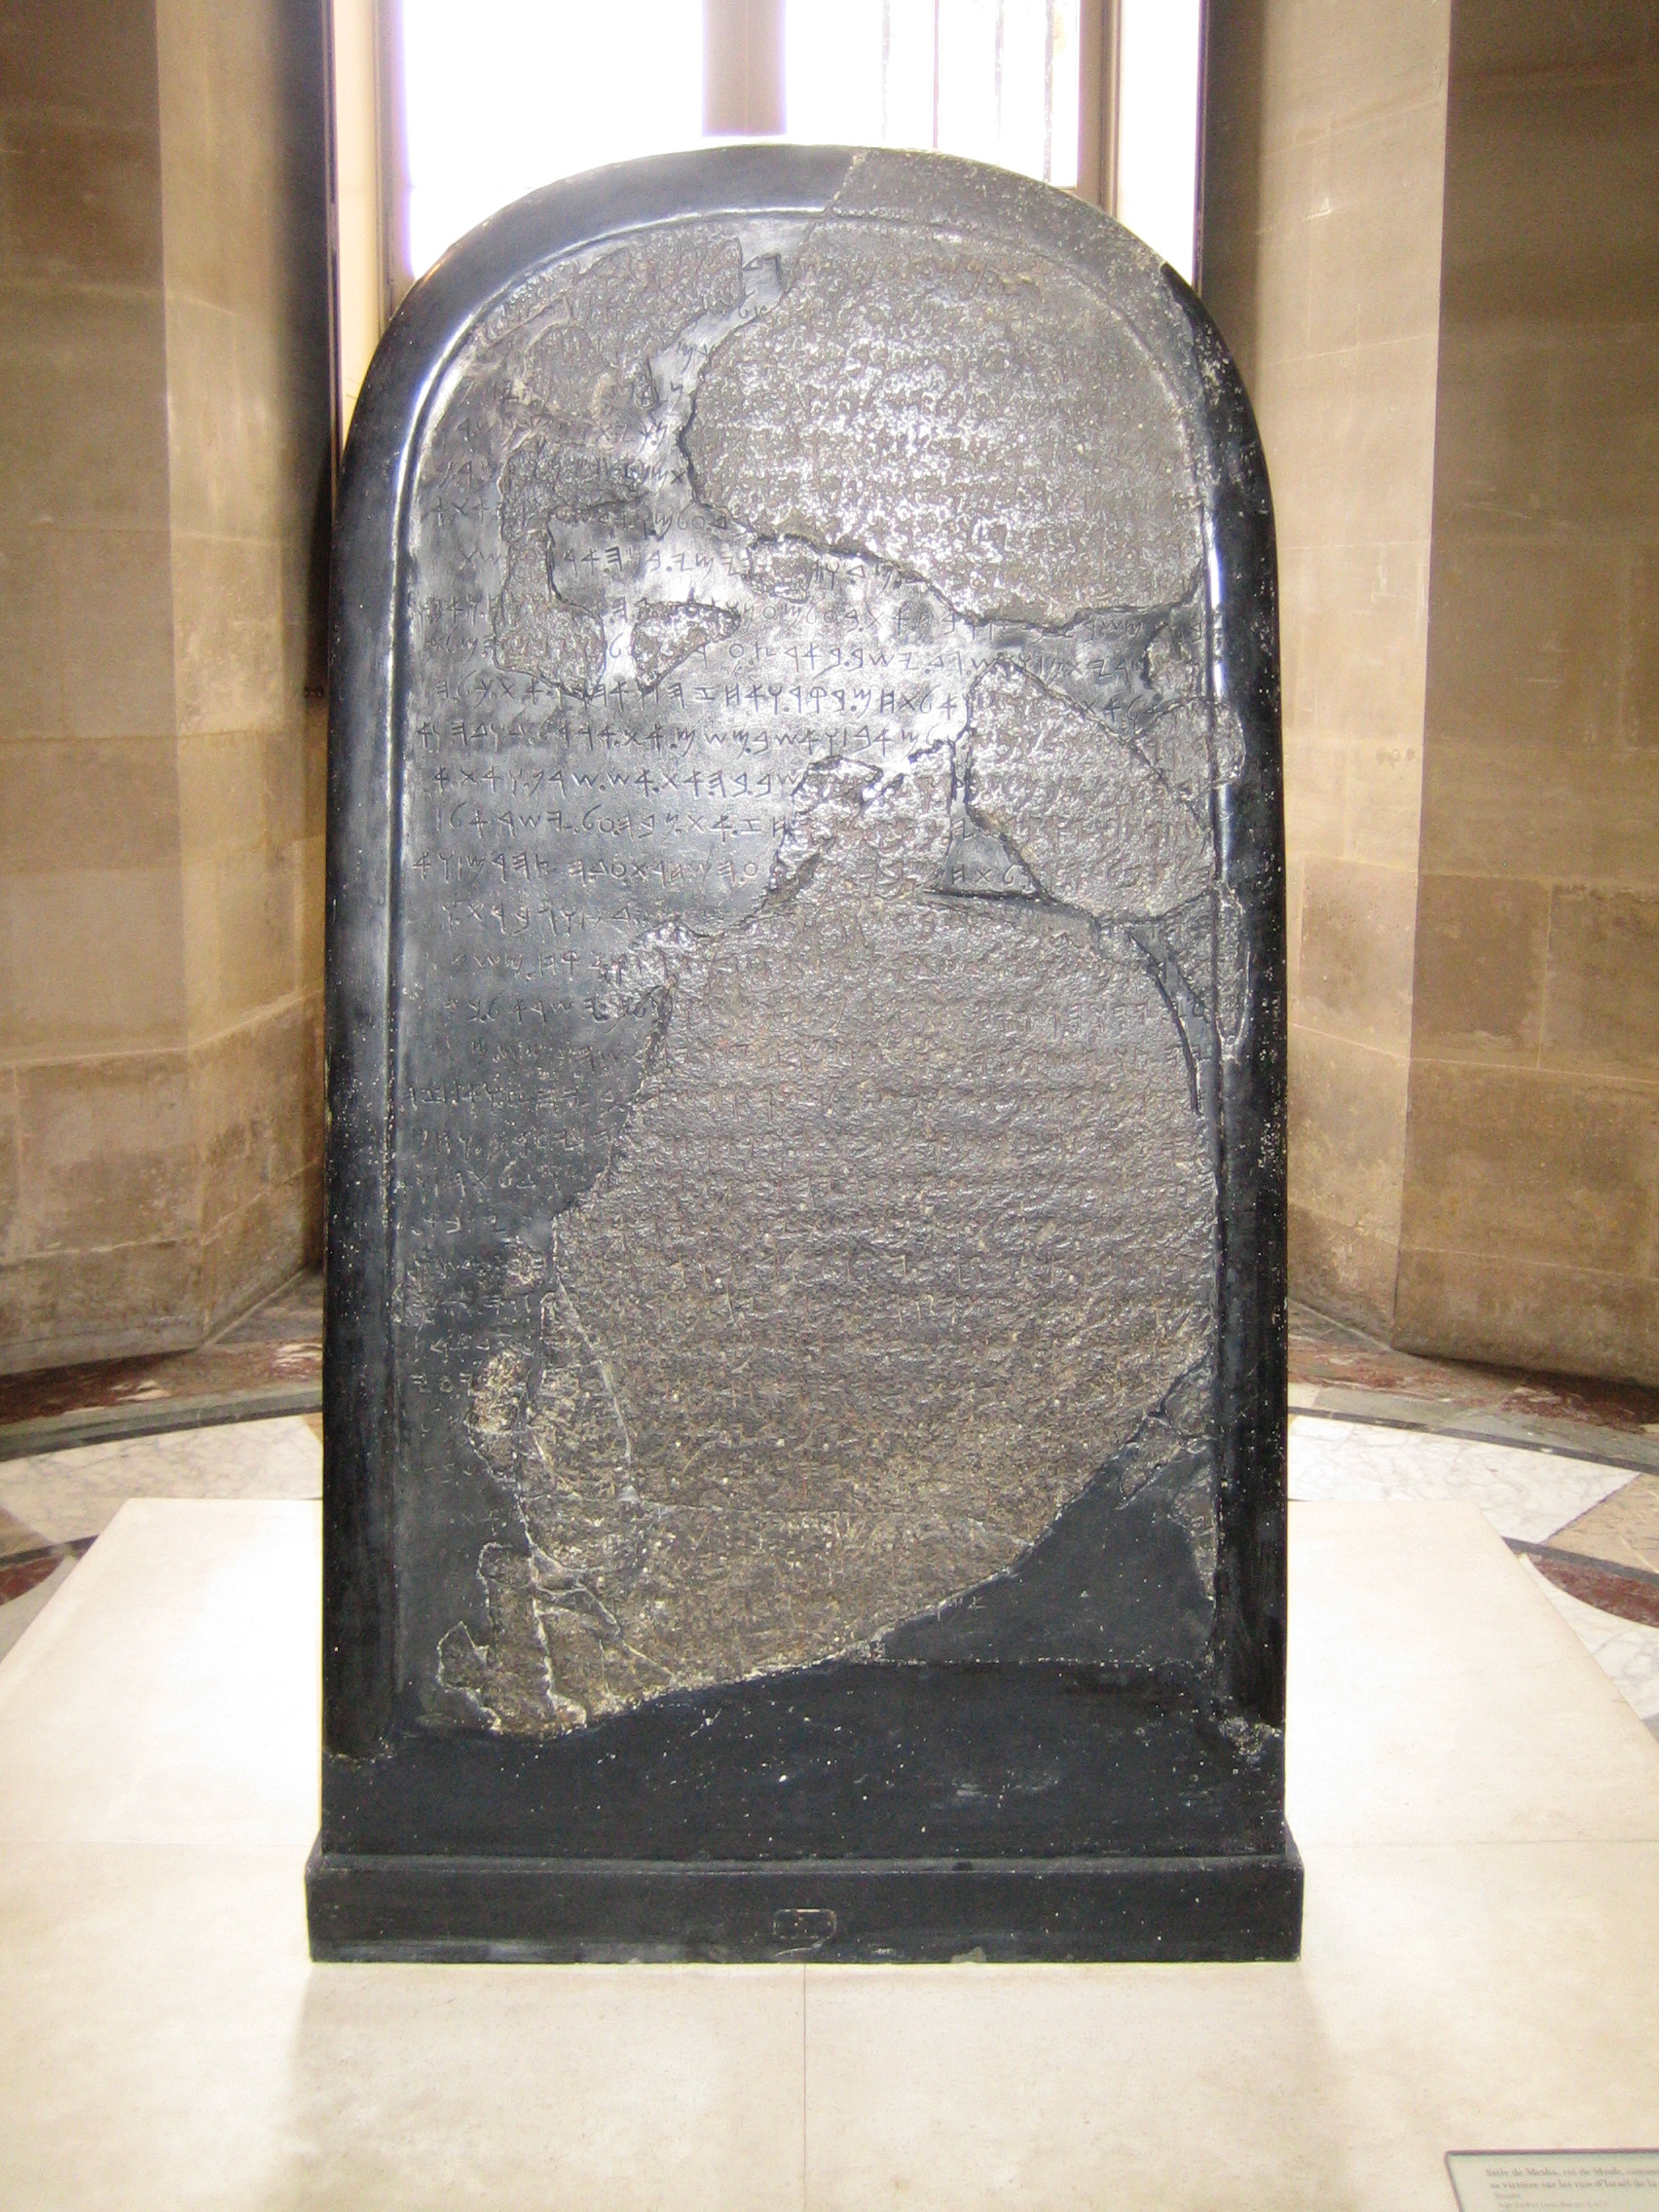 上图：1868年在约旦发现的摩押王米沙石碑（Mesha Stele），现存于卢浮宫。碑文以原始希伯来字母书写，大约刻于主前840年，以纪念米沙王战胜以色列王。这块石碑证明了圣经有关以色列人及摩押人争战的事件（王下一1-三27），并提到了以色列王暗利的名字。其中褐色部分是原来石碑的碎片，黑色光滑部分是1870年代重建的。石碑被发现时是完全的，后来奥斯曼帝国卷入了所有权纠纷，拥有石碑的贝都因部落便在篝火上加热石碑、然后浇冷水，打破了石碑。但发现者之前已经拓下了完整的碑文，最后重建了石碑。